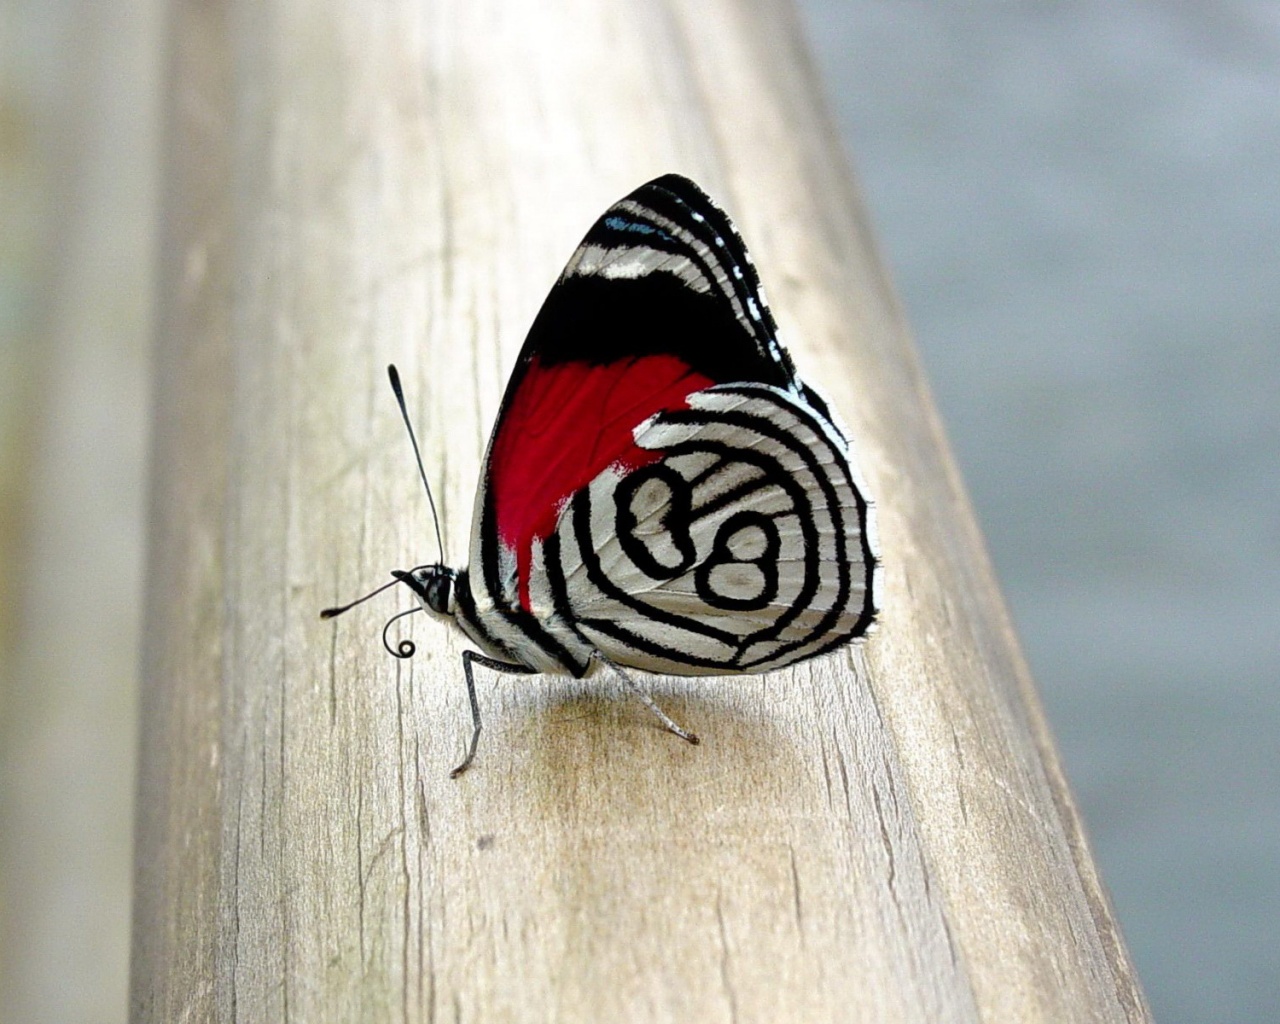 Бабочка на бревне обои